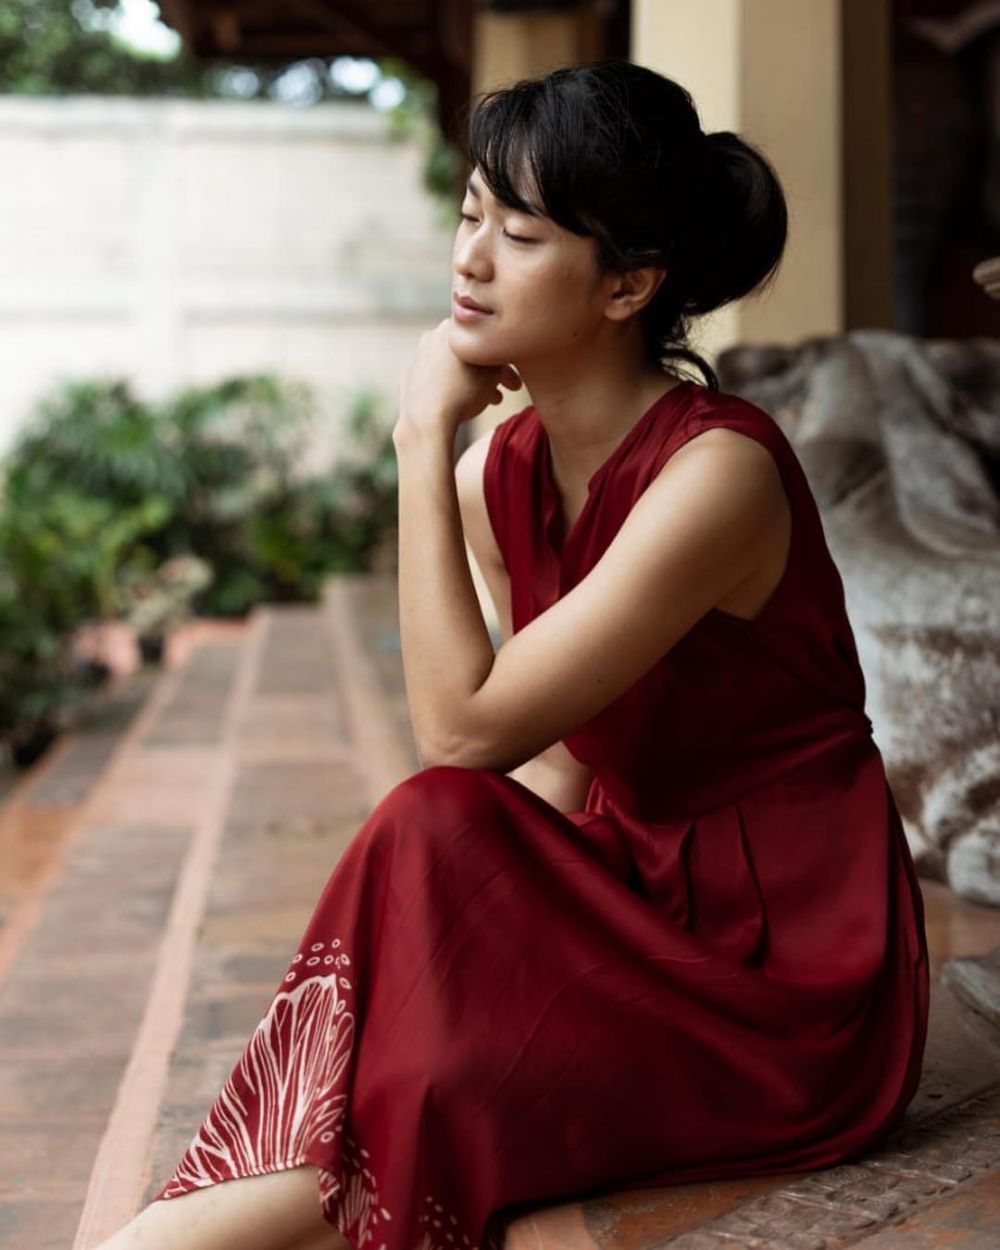 Biasa tampil tomboi, ini 10 potret anggun Prisia Nasution pakai dress